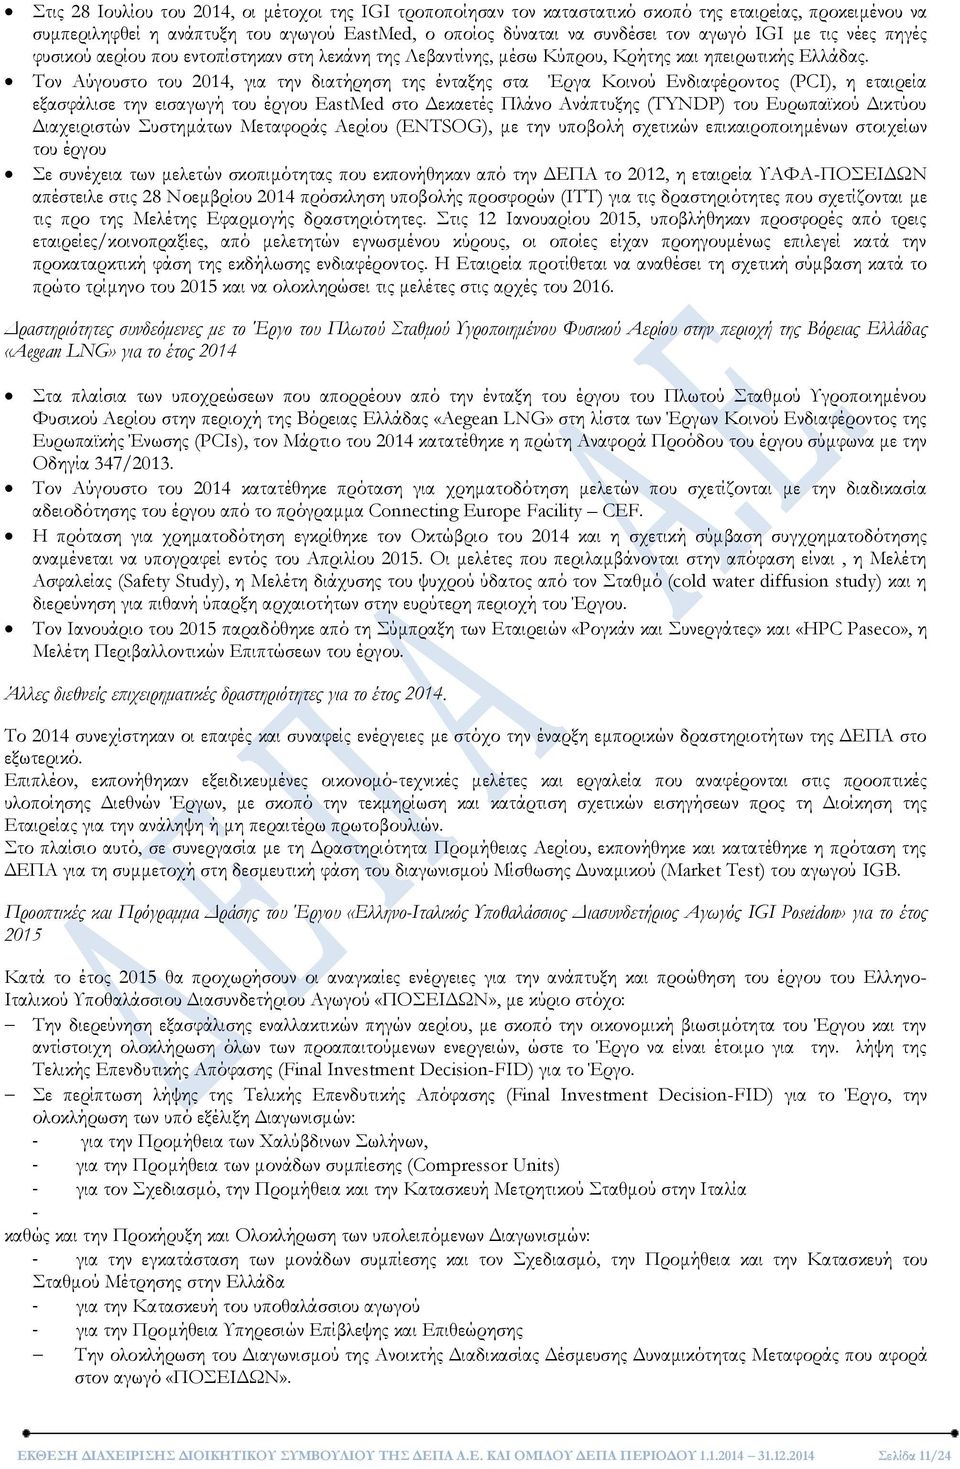 Τον Αύγουστο του 2014, για την διατήρηση της ένταξης στα Έργα Κοινού Ενδιαφέροντος (PCI), η εταιρεία εξασφάλισε την εισαγωγή του έργου EastMed στο Δεκαετές Πλάνο Ανάπτυξης (TYNDP) του Ευρωπαϊκού